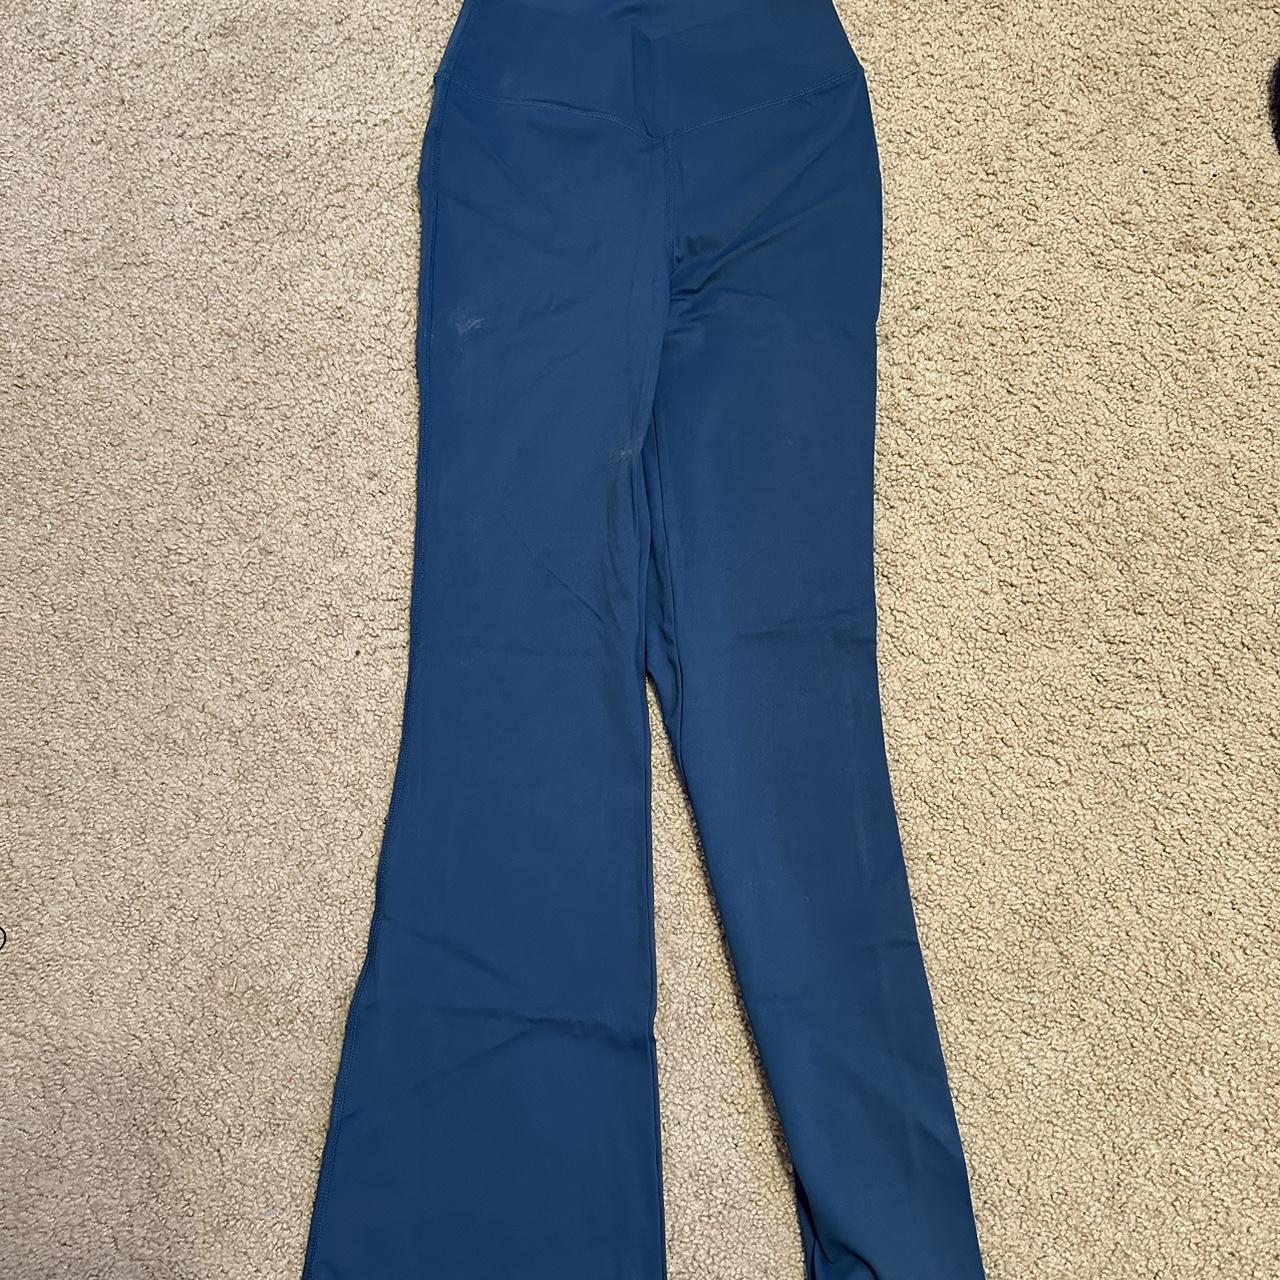 teal/ocean blue crossed flare leggings - Depop